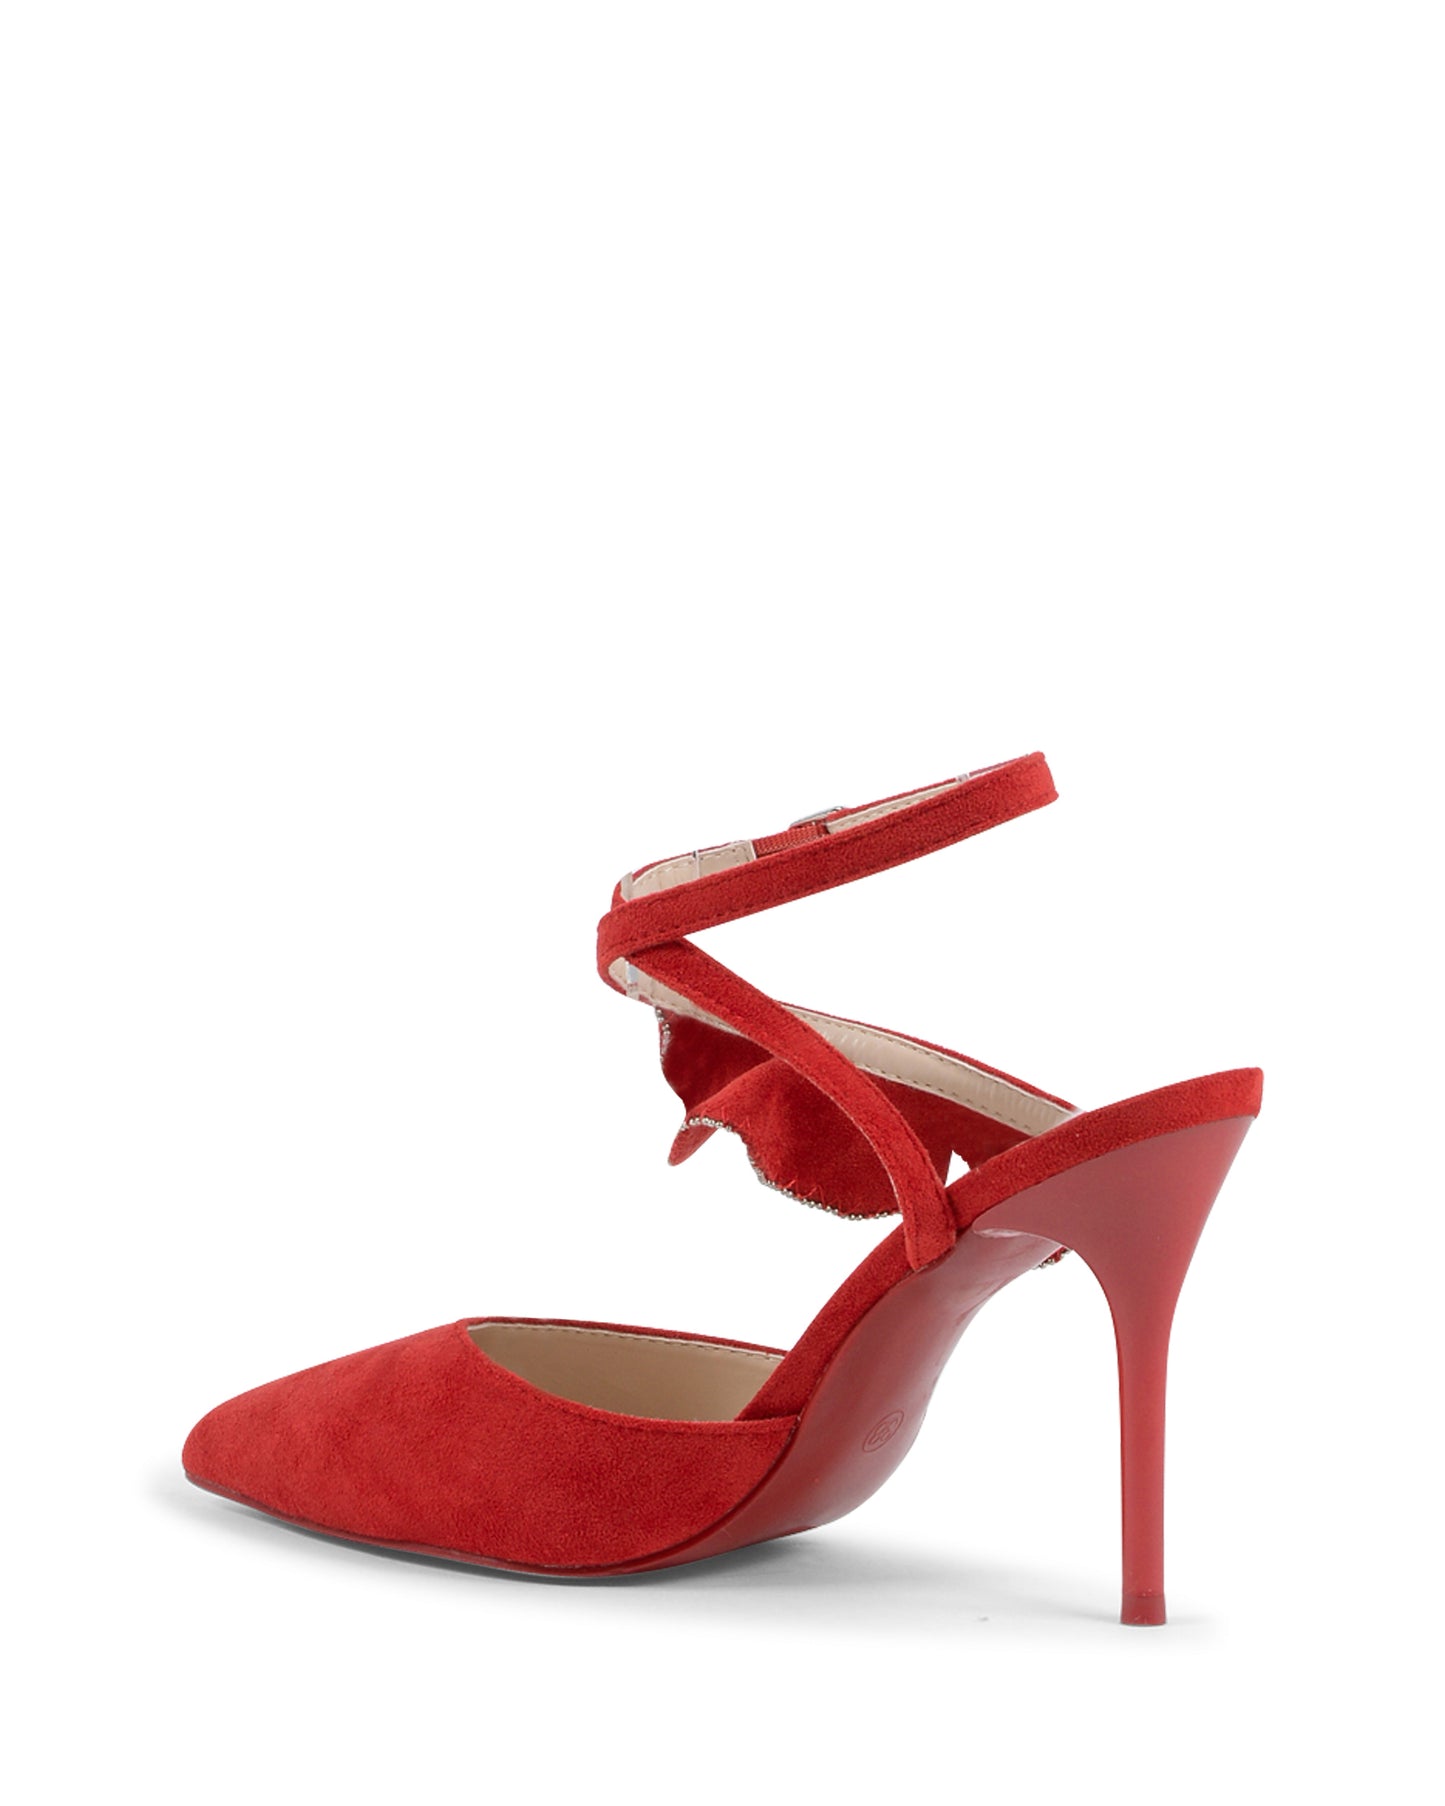 19V69 Italia Womens Ankle Strap Sandal Red V151 RED